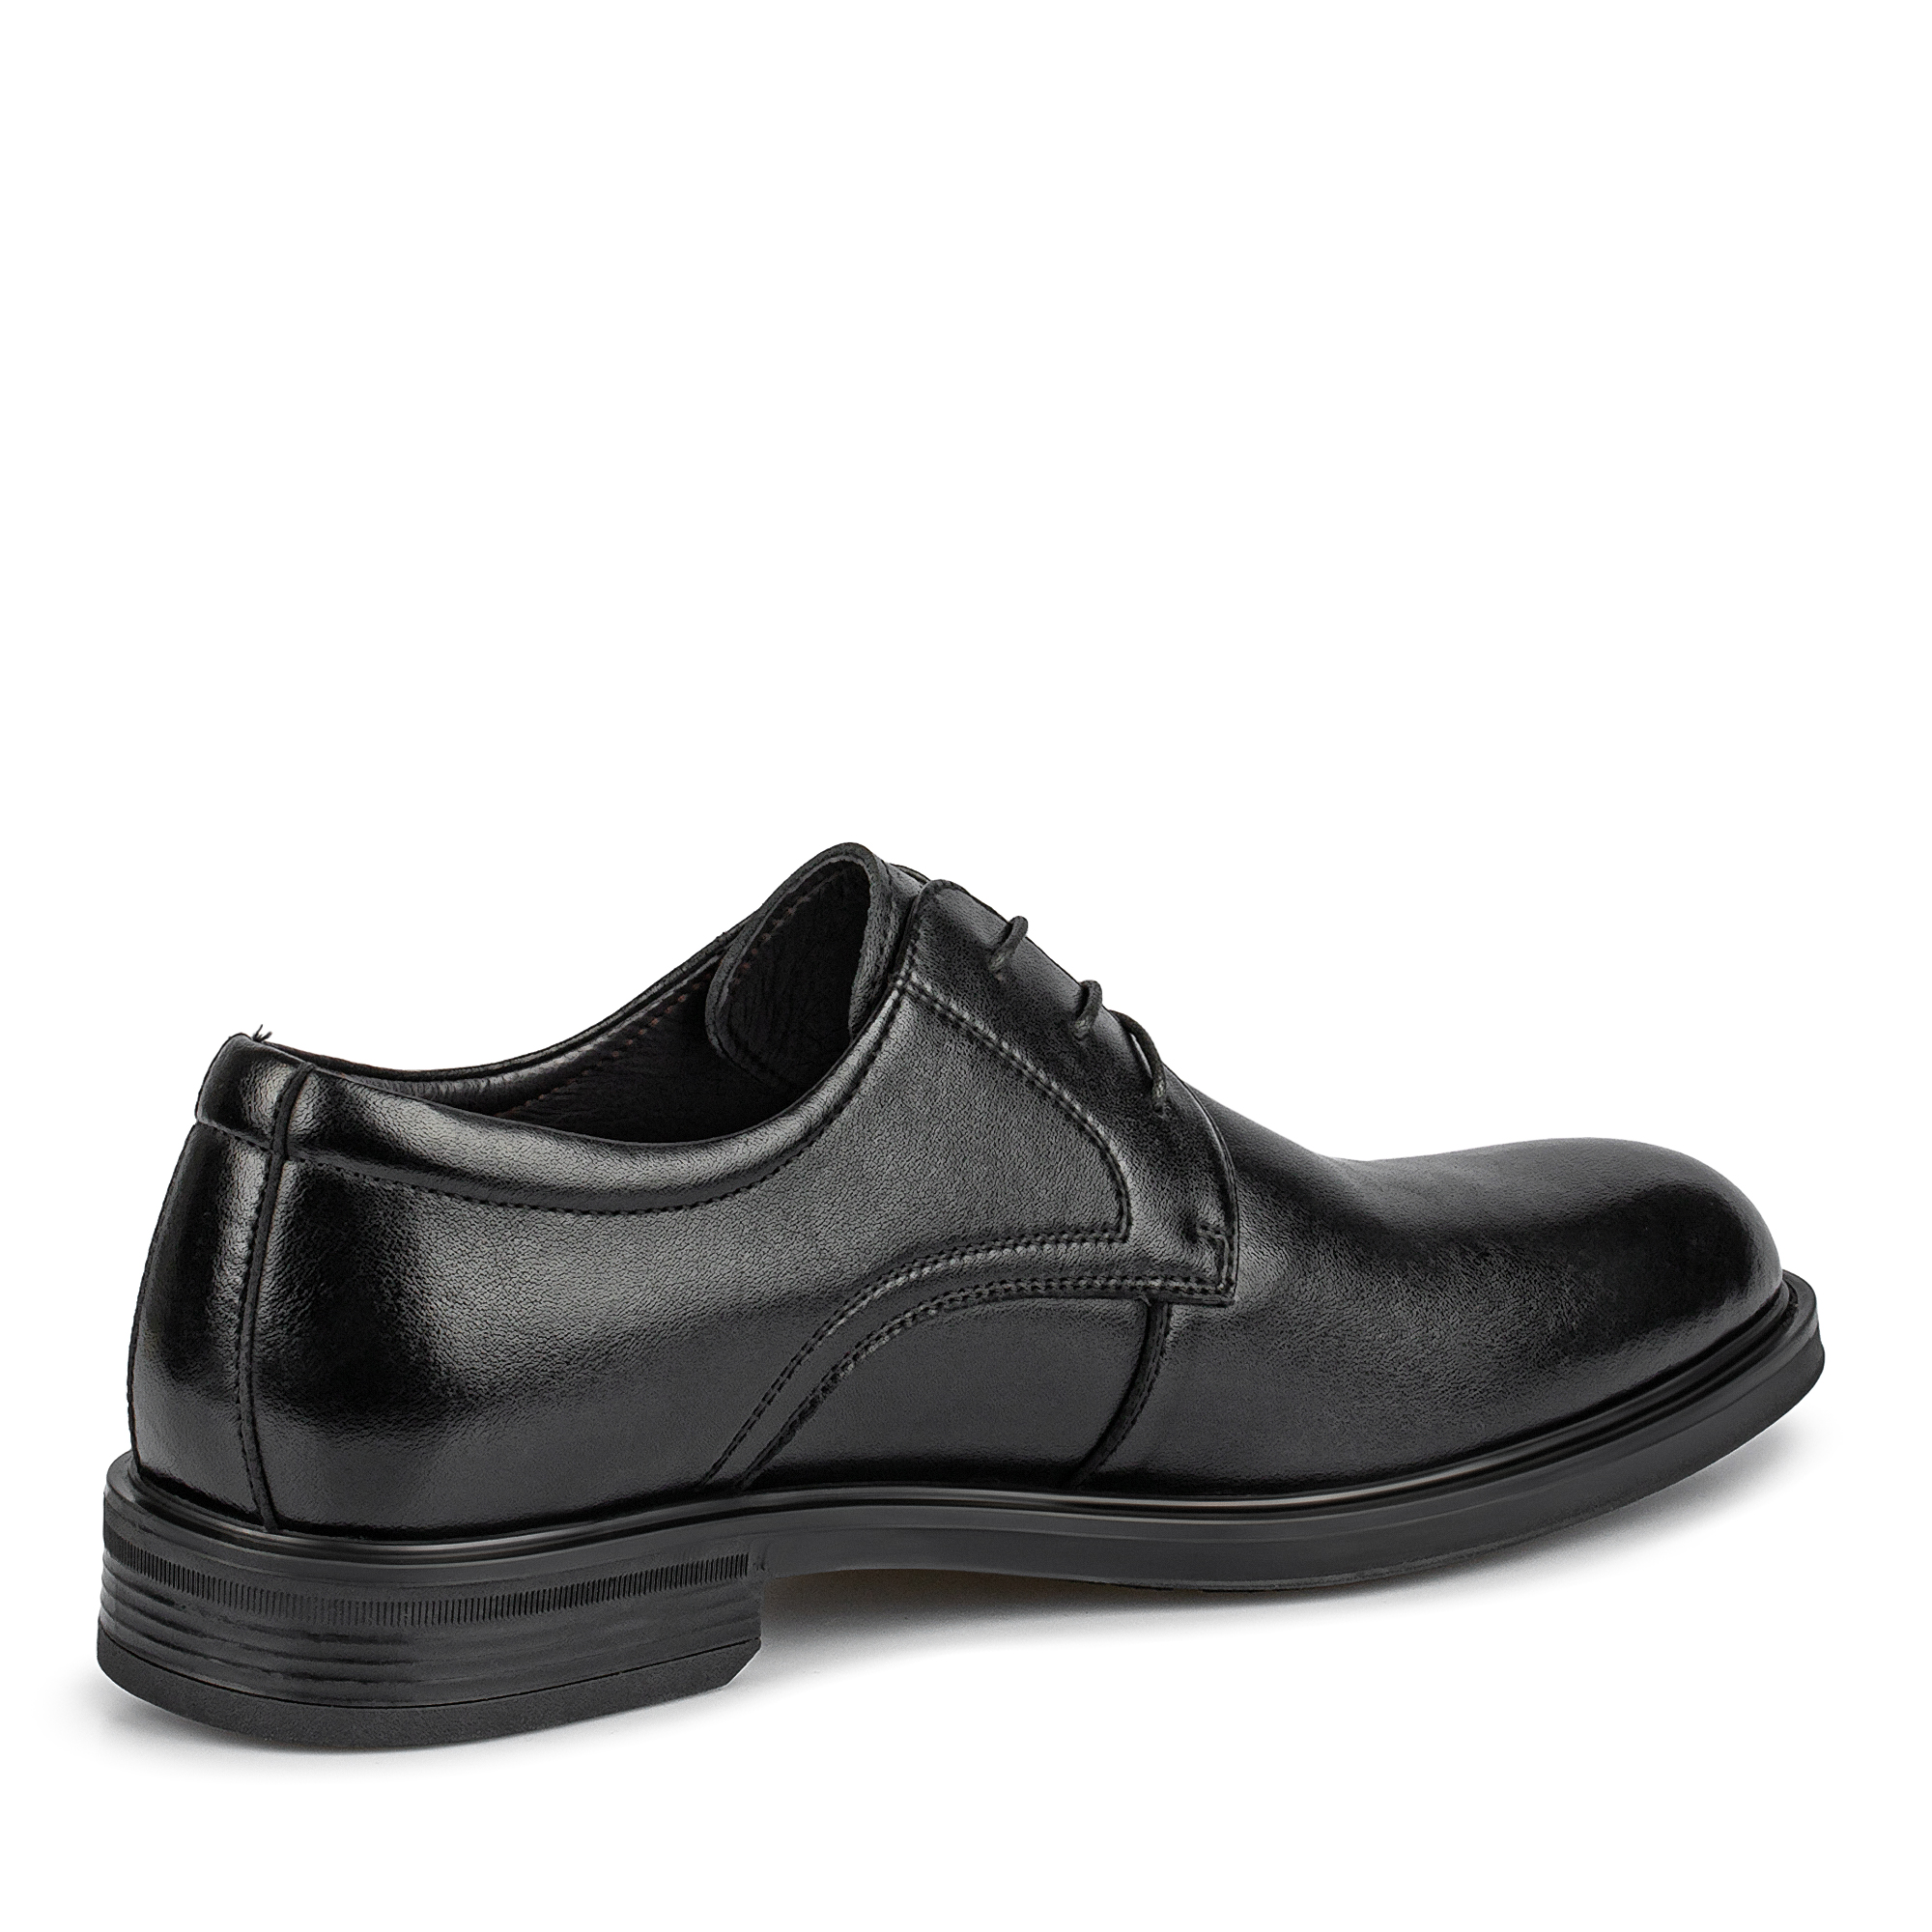 Туфли/полуботинки Thomas Munz 104-647A-1602, цвет черный, размер 42 - фото 3